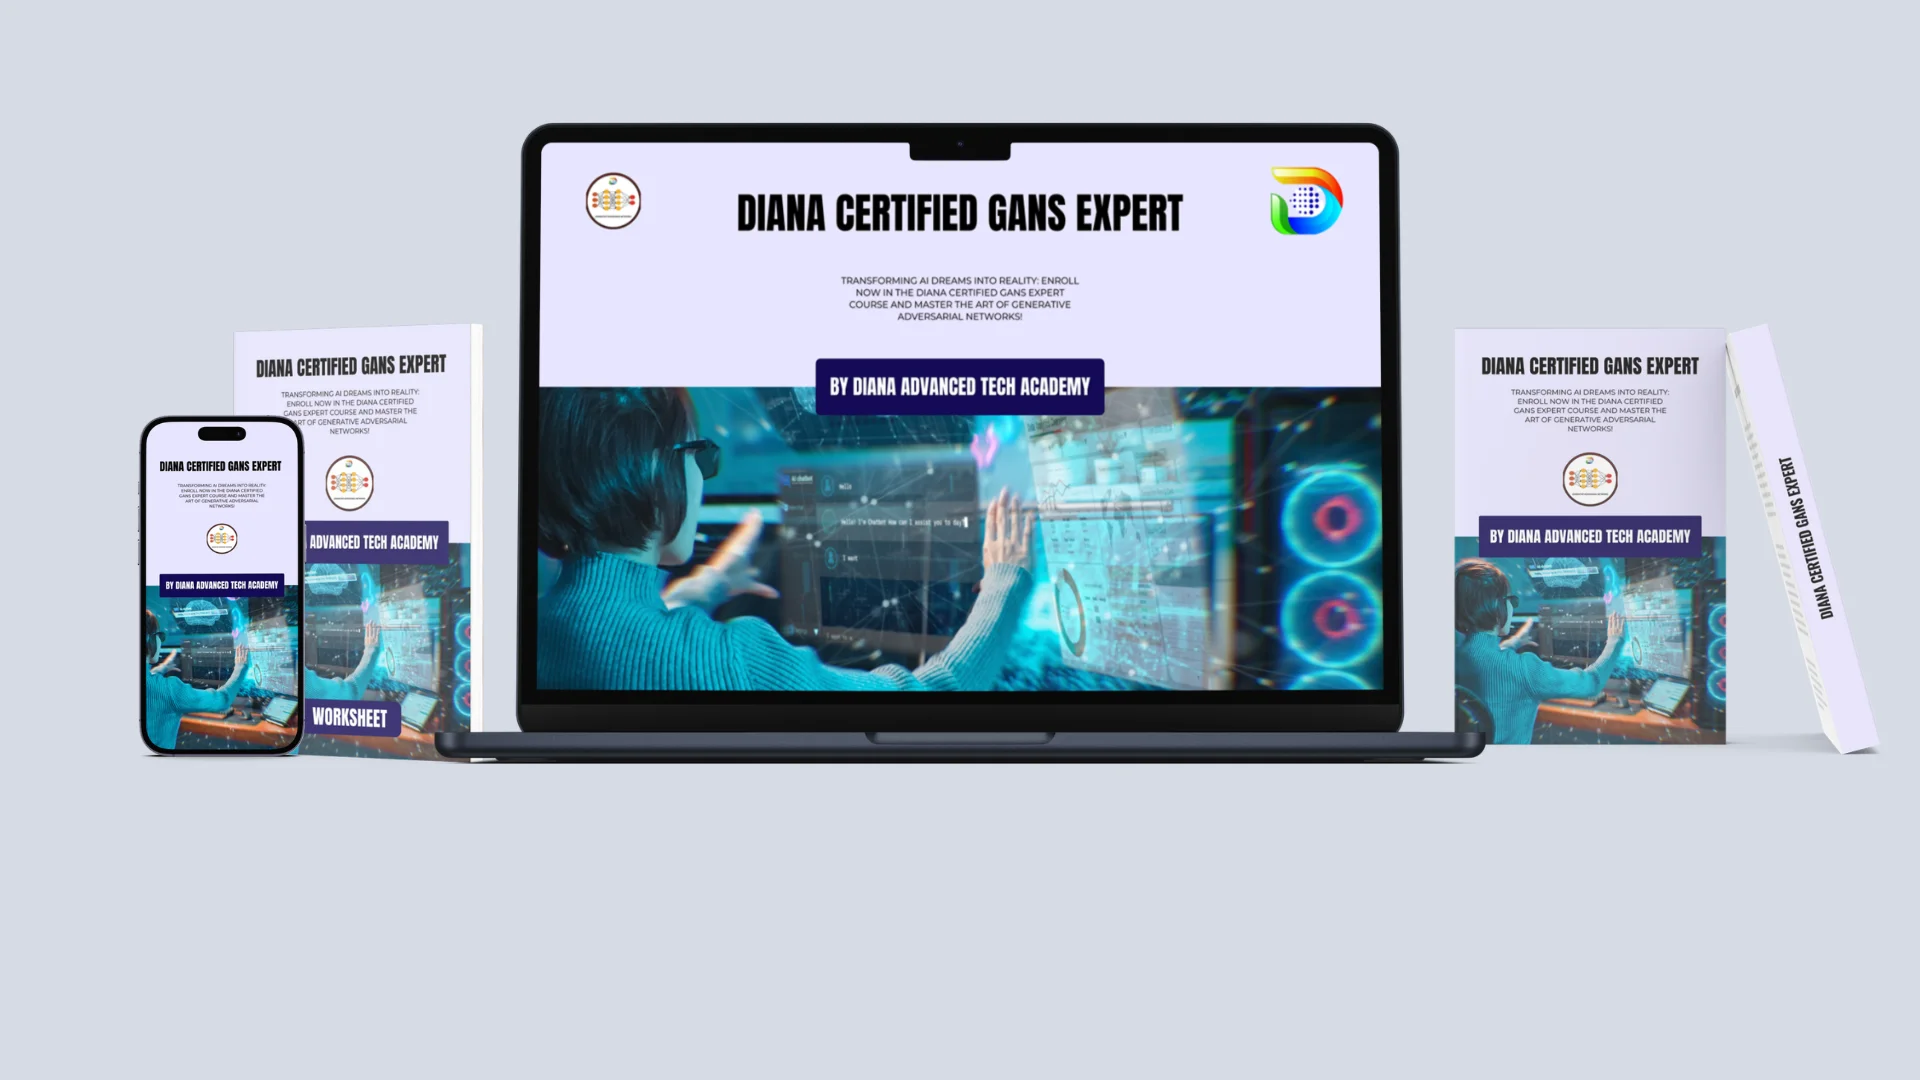 Diana Certified GANs Expert